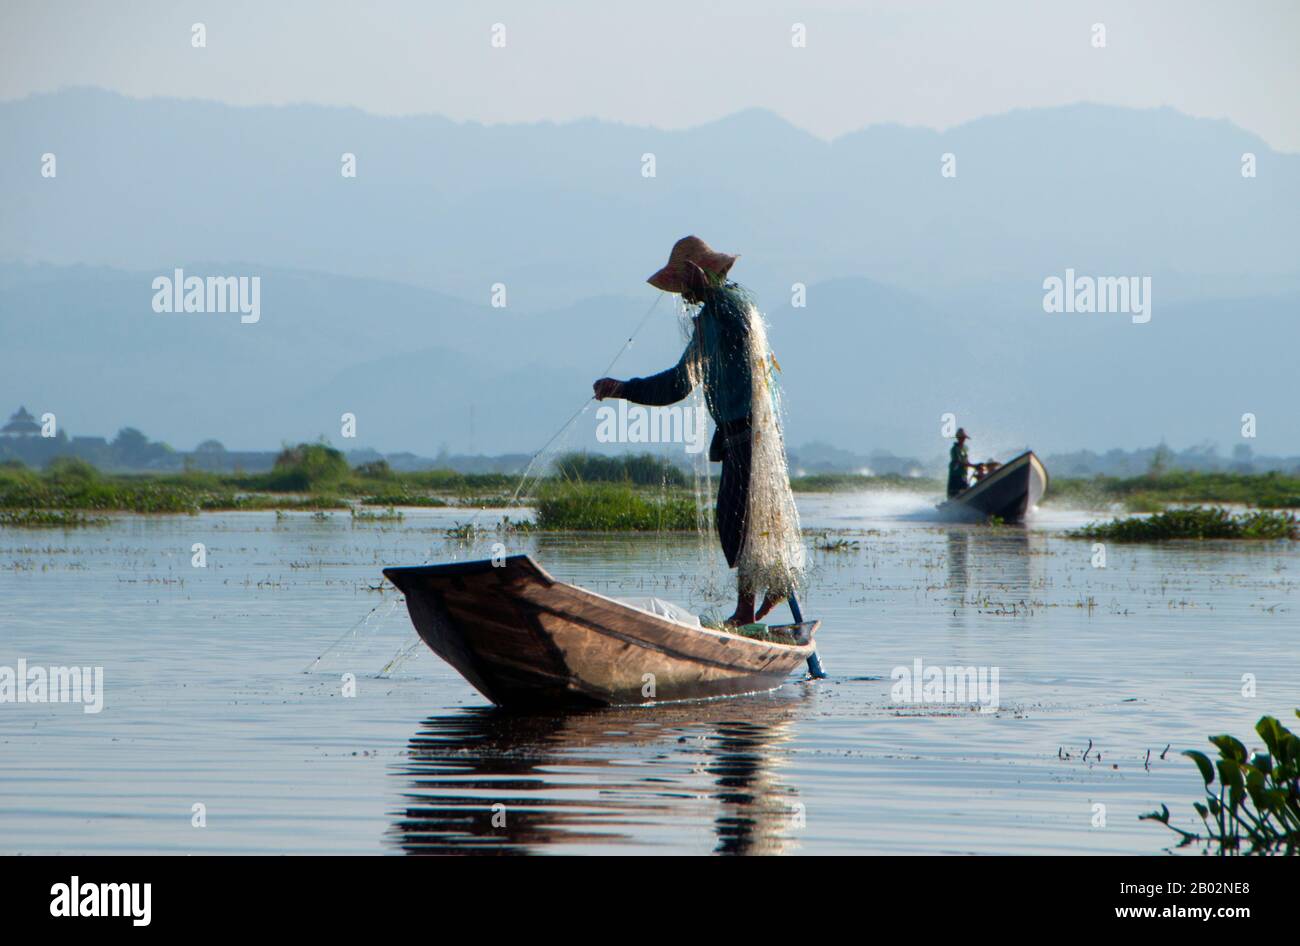 Der Inle Lake (116 km2) ist flach, lang, kristallklar und ruhig. Hier leben die Intha-Menschen, die auf beiden Seiten von hohen Hügeln eingehüftet sind. Die Intha-Männer sind dafür berühmt, dass sie mit einem Bein aufstehen, während sie mit hohen, konischen fallen für Inle-Karpfen und den anderen, kleineren Fischen, mit denen der See schwärmt, angeln. Die Intha-Frauen, die Marktgärtner sind, nutzen den fruchtbaren Boden rund um den See sowie schwimmende Inseln aus Wasserhyazinthen und Schlamm, um Blumenkohl, Tomaten, Gurken, Kabbagen, Bohnen und Auberginen anzubauen. Inle ist ein einfacher Ort, aber ein Ort mit viel - beides erholsam Stockfoto